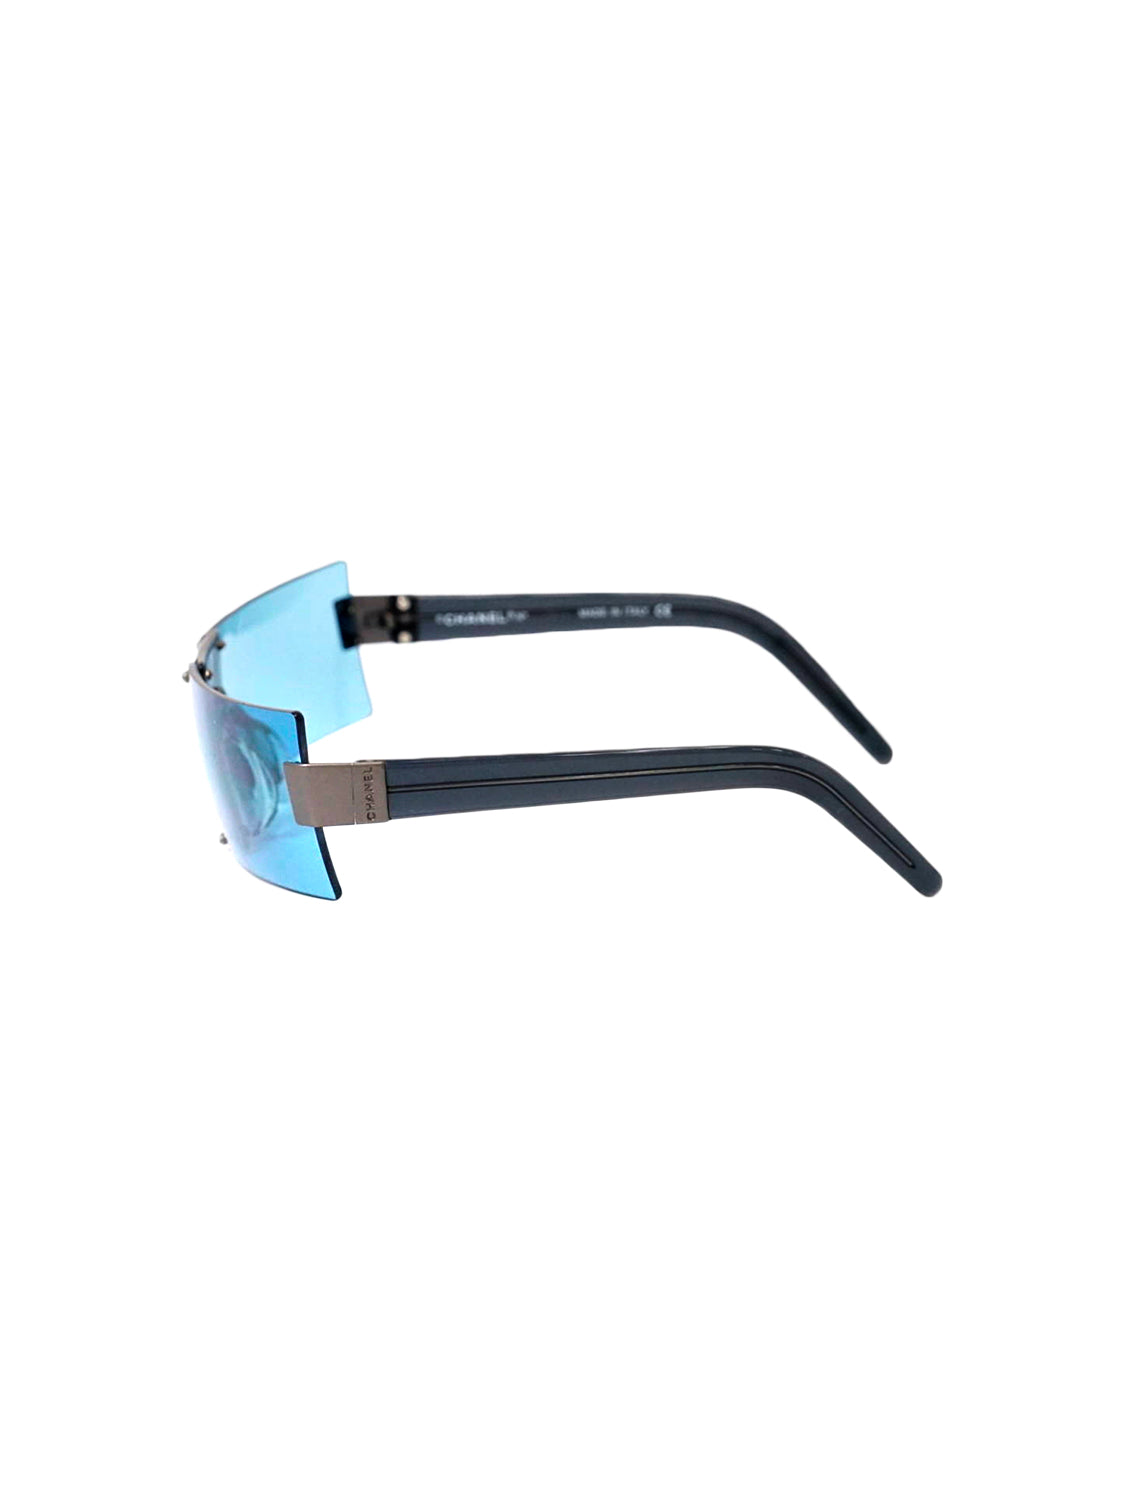 Chanel 2000s Blue Rectangular Visor Sunglasses